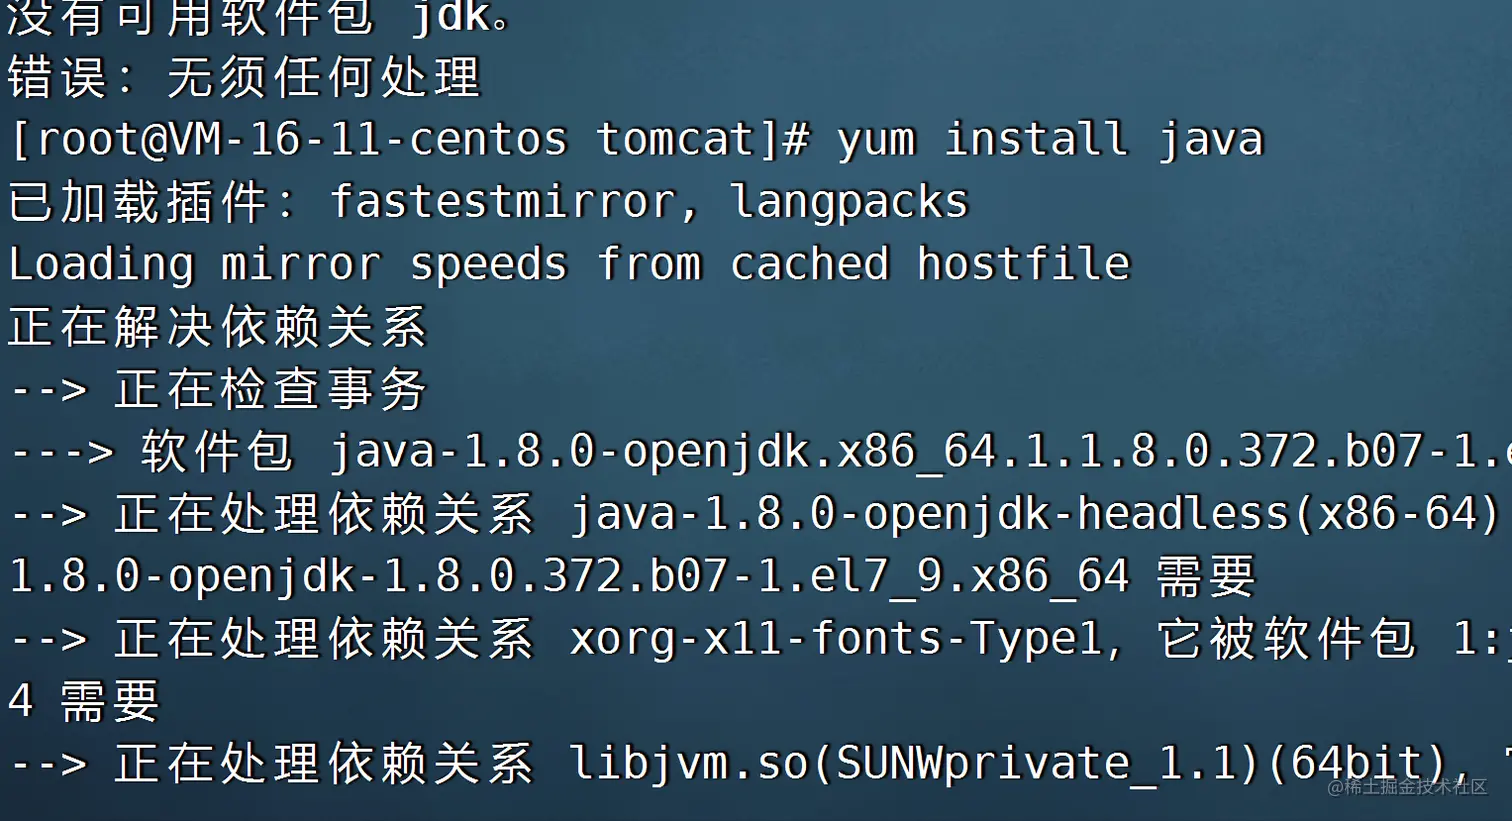 云服务器上安装配置tomcat并在Tomcat上放置自己写入的一个小程序并添加外网访问端口的教程(超级详细版)_tomcat_15